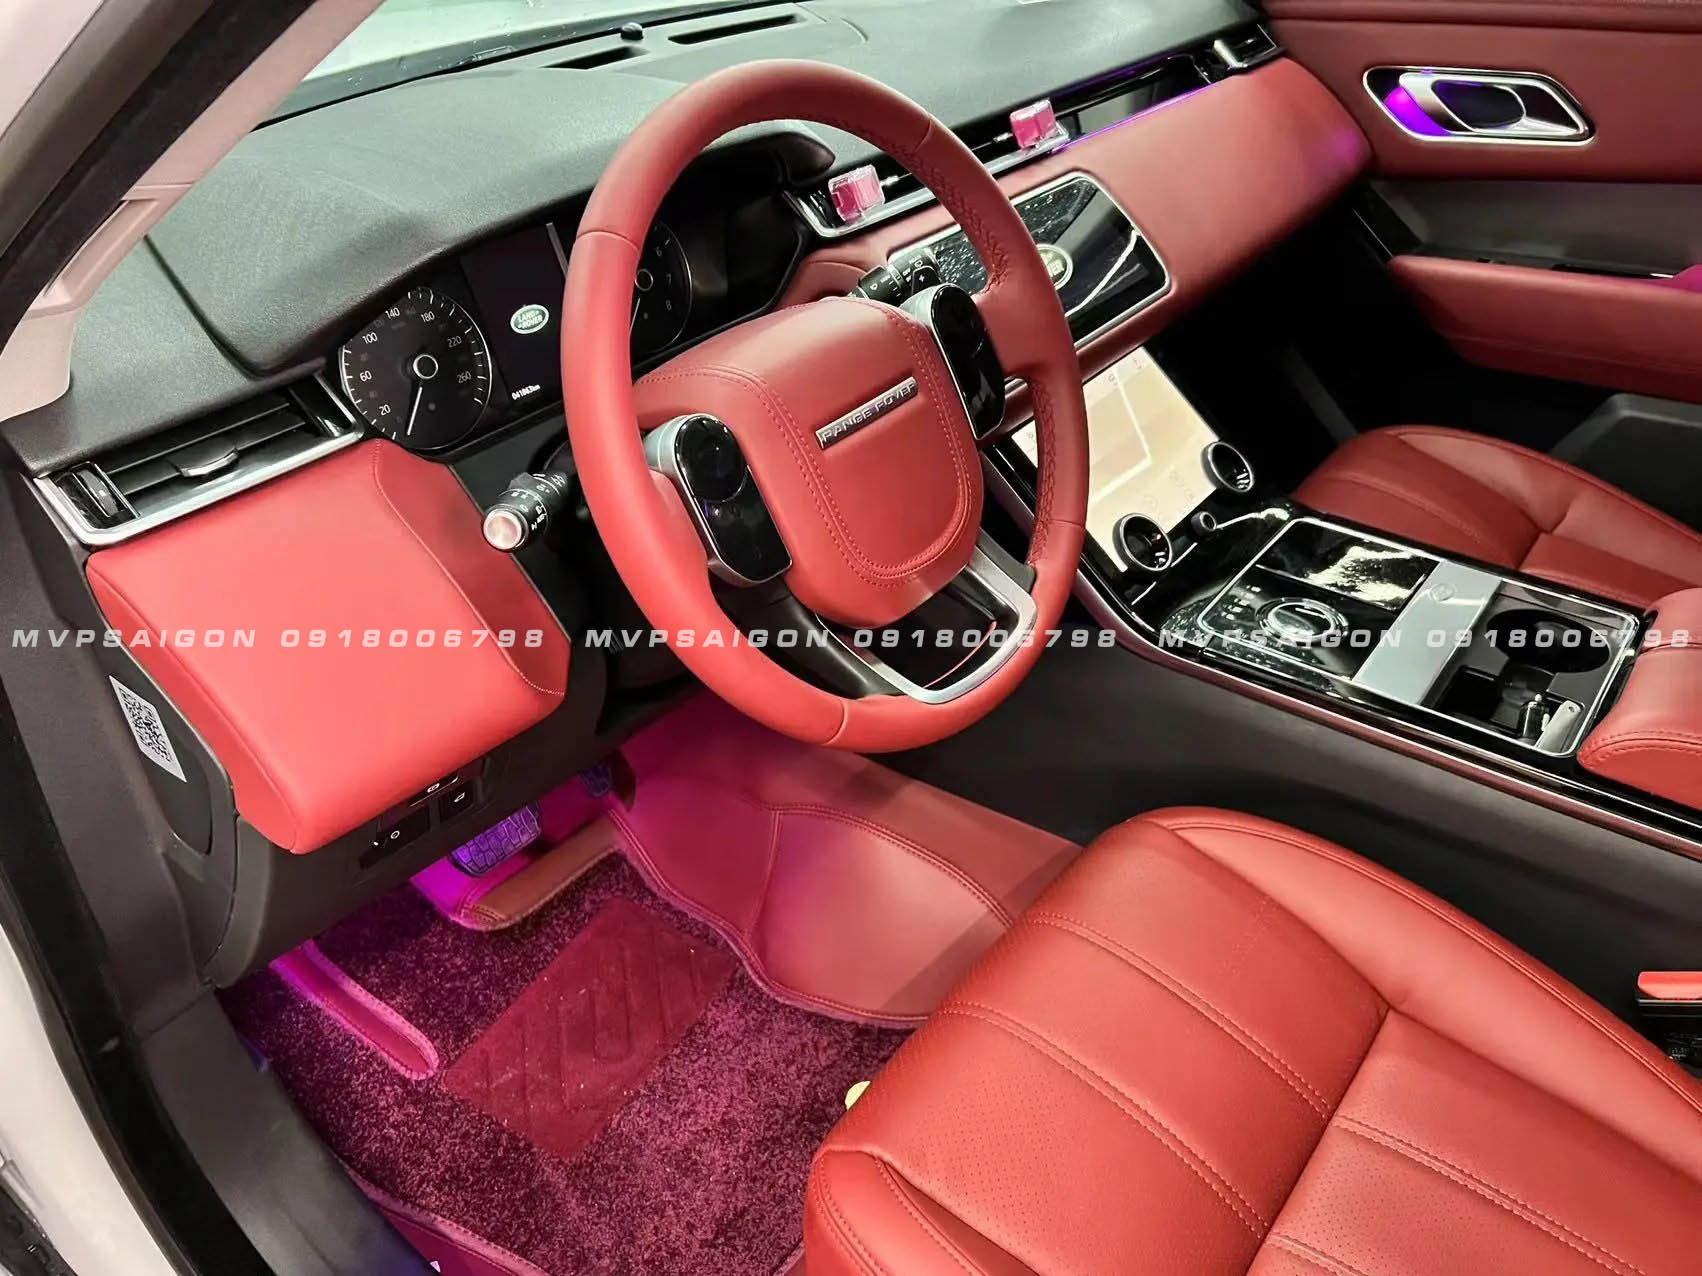 Range Rover Velar bọc da Nappa nội thất tông đỏ - đen